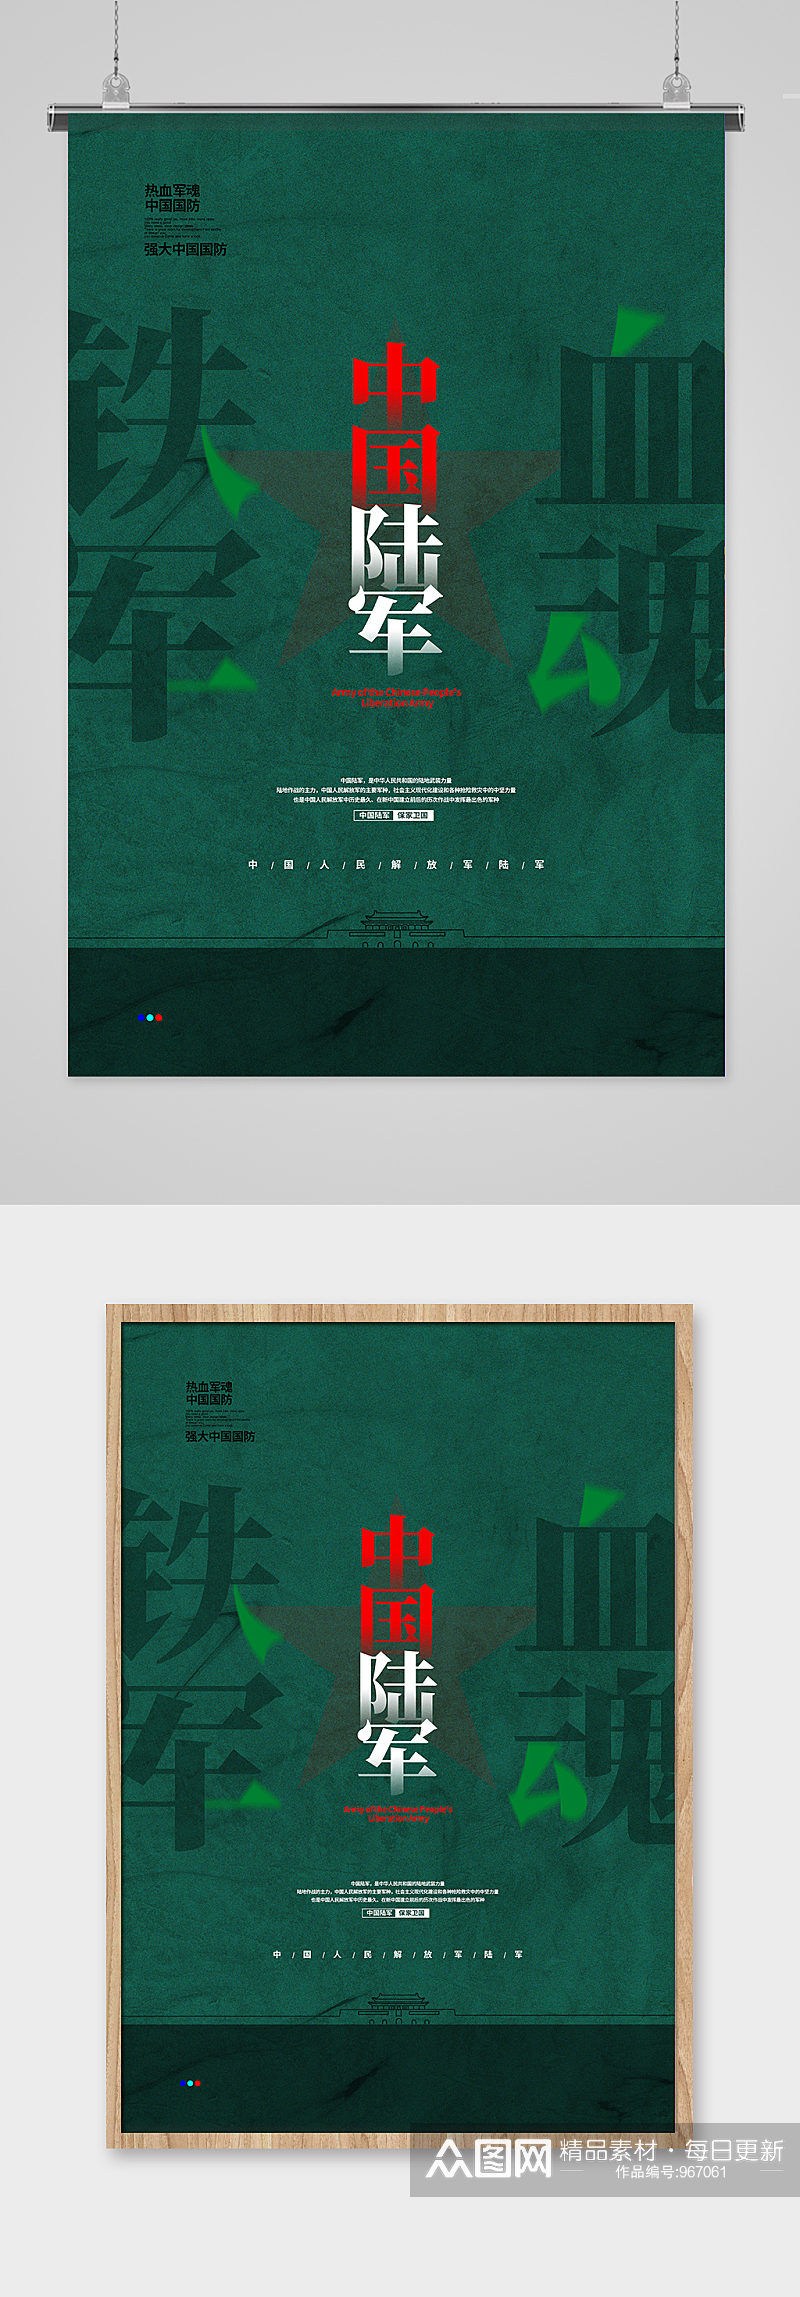 绿色简约铁血军魂 中国人民解放军 陆军宣传海报设计素材